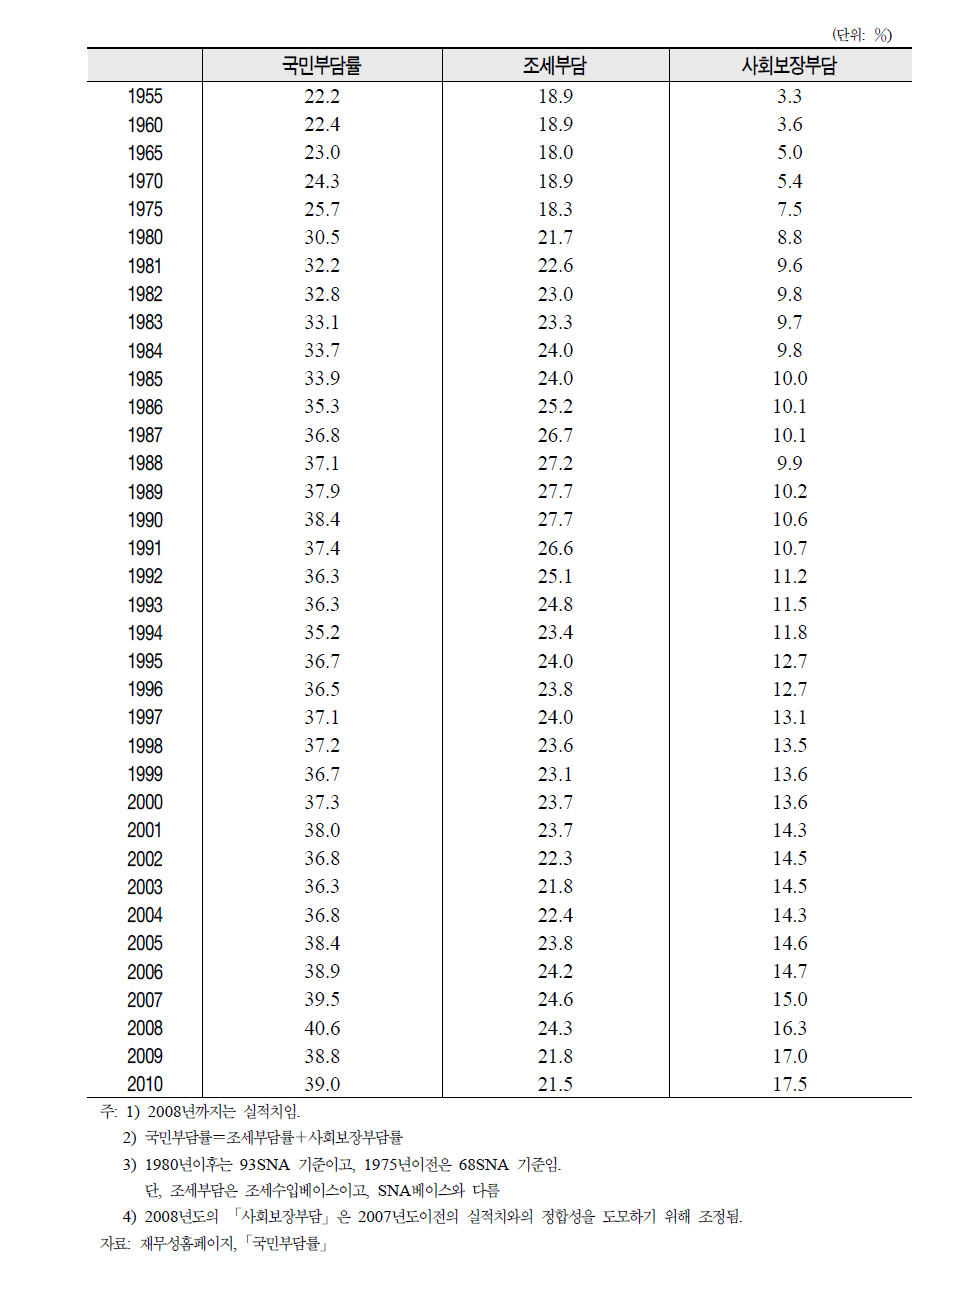 일본의 국민부담률(조세부담+사회보장부담)의 대국민소득비 추이